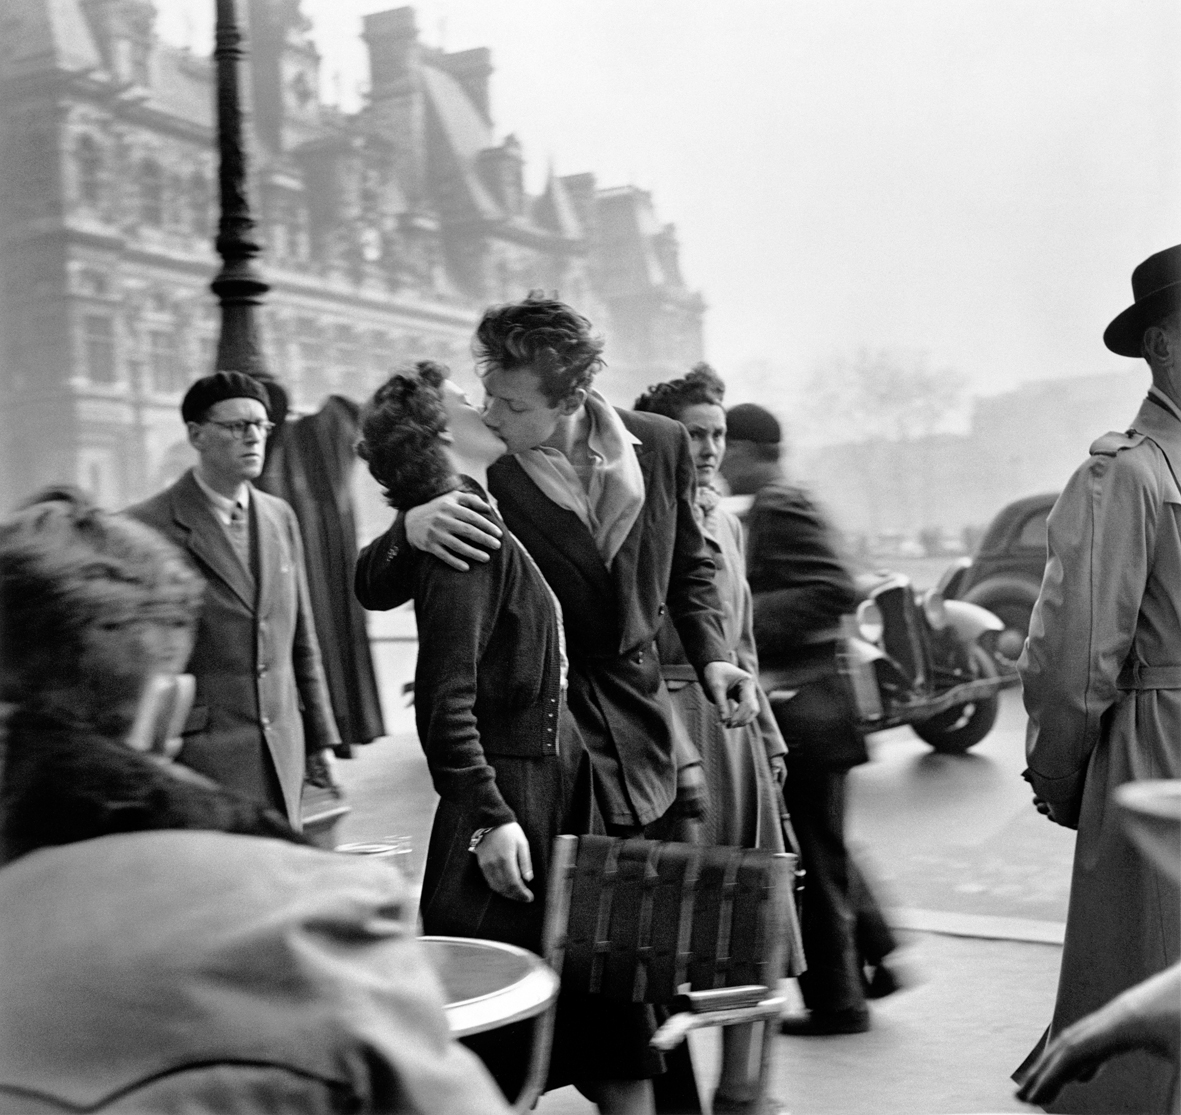 Robert Doisneau, Le baiser de l’Hôtel de Ville, Paris 1950 © Robert Doisneau